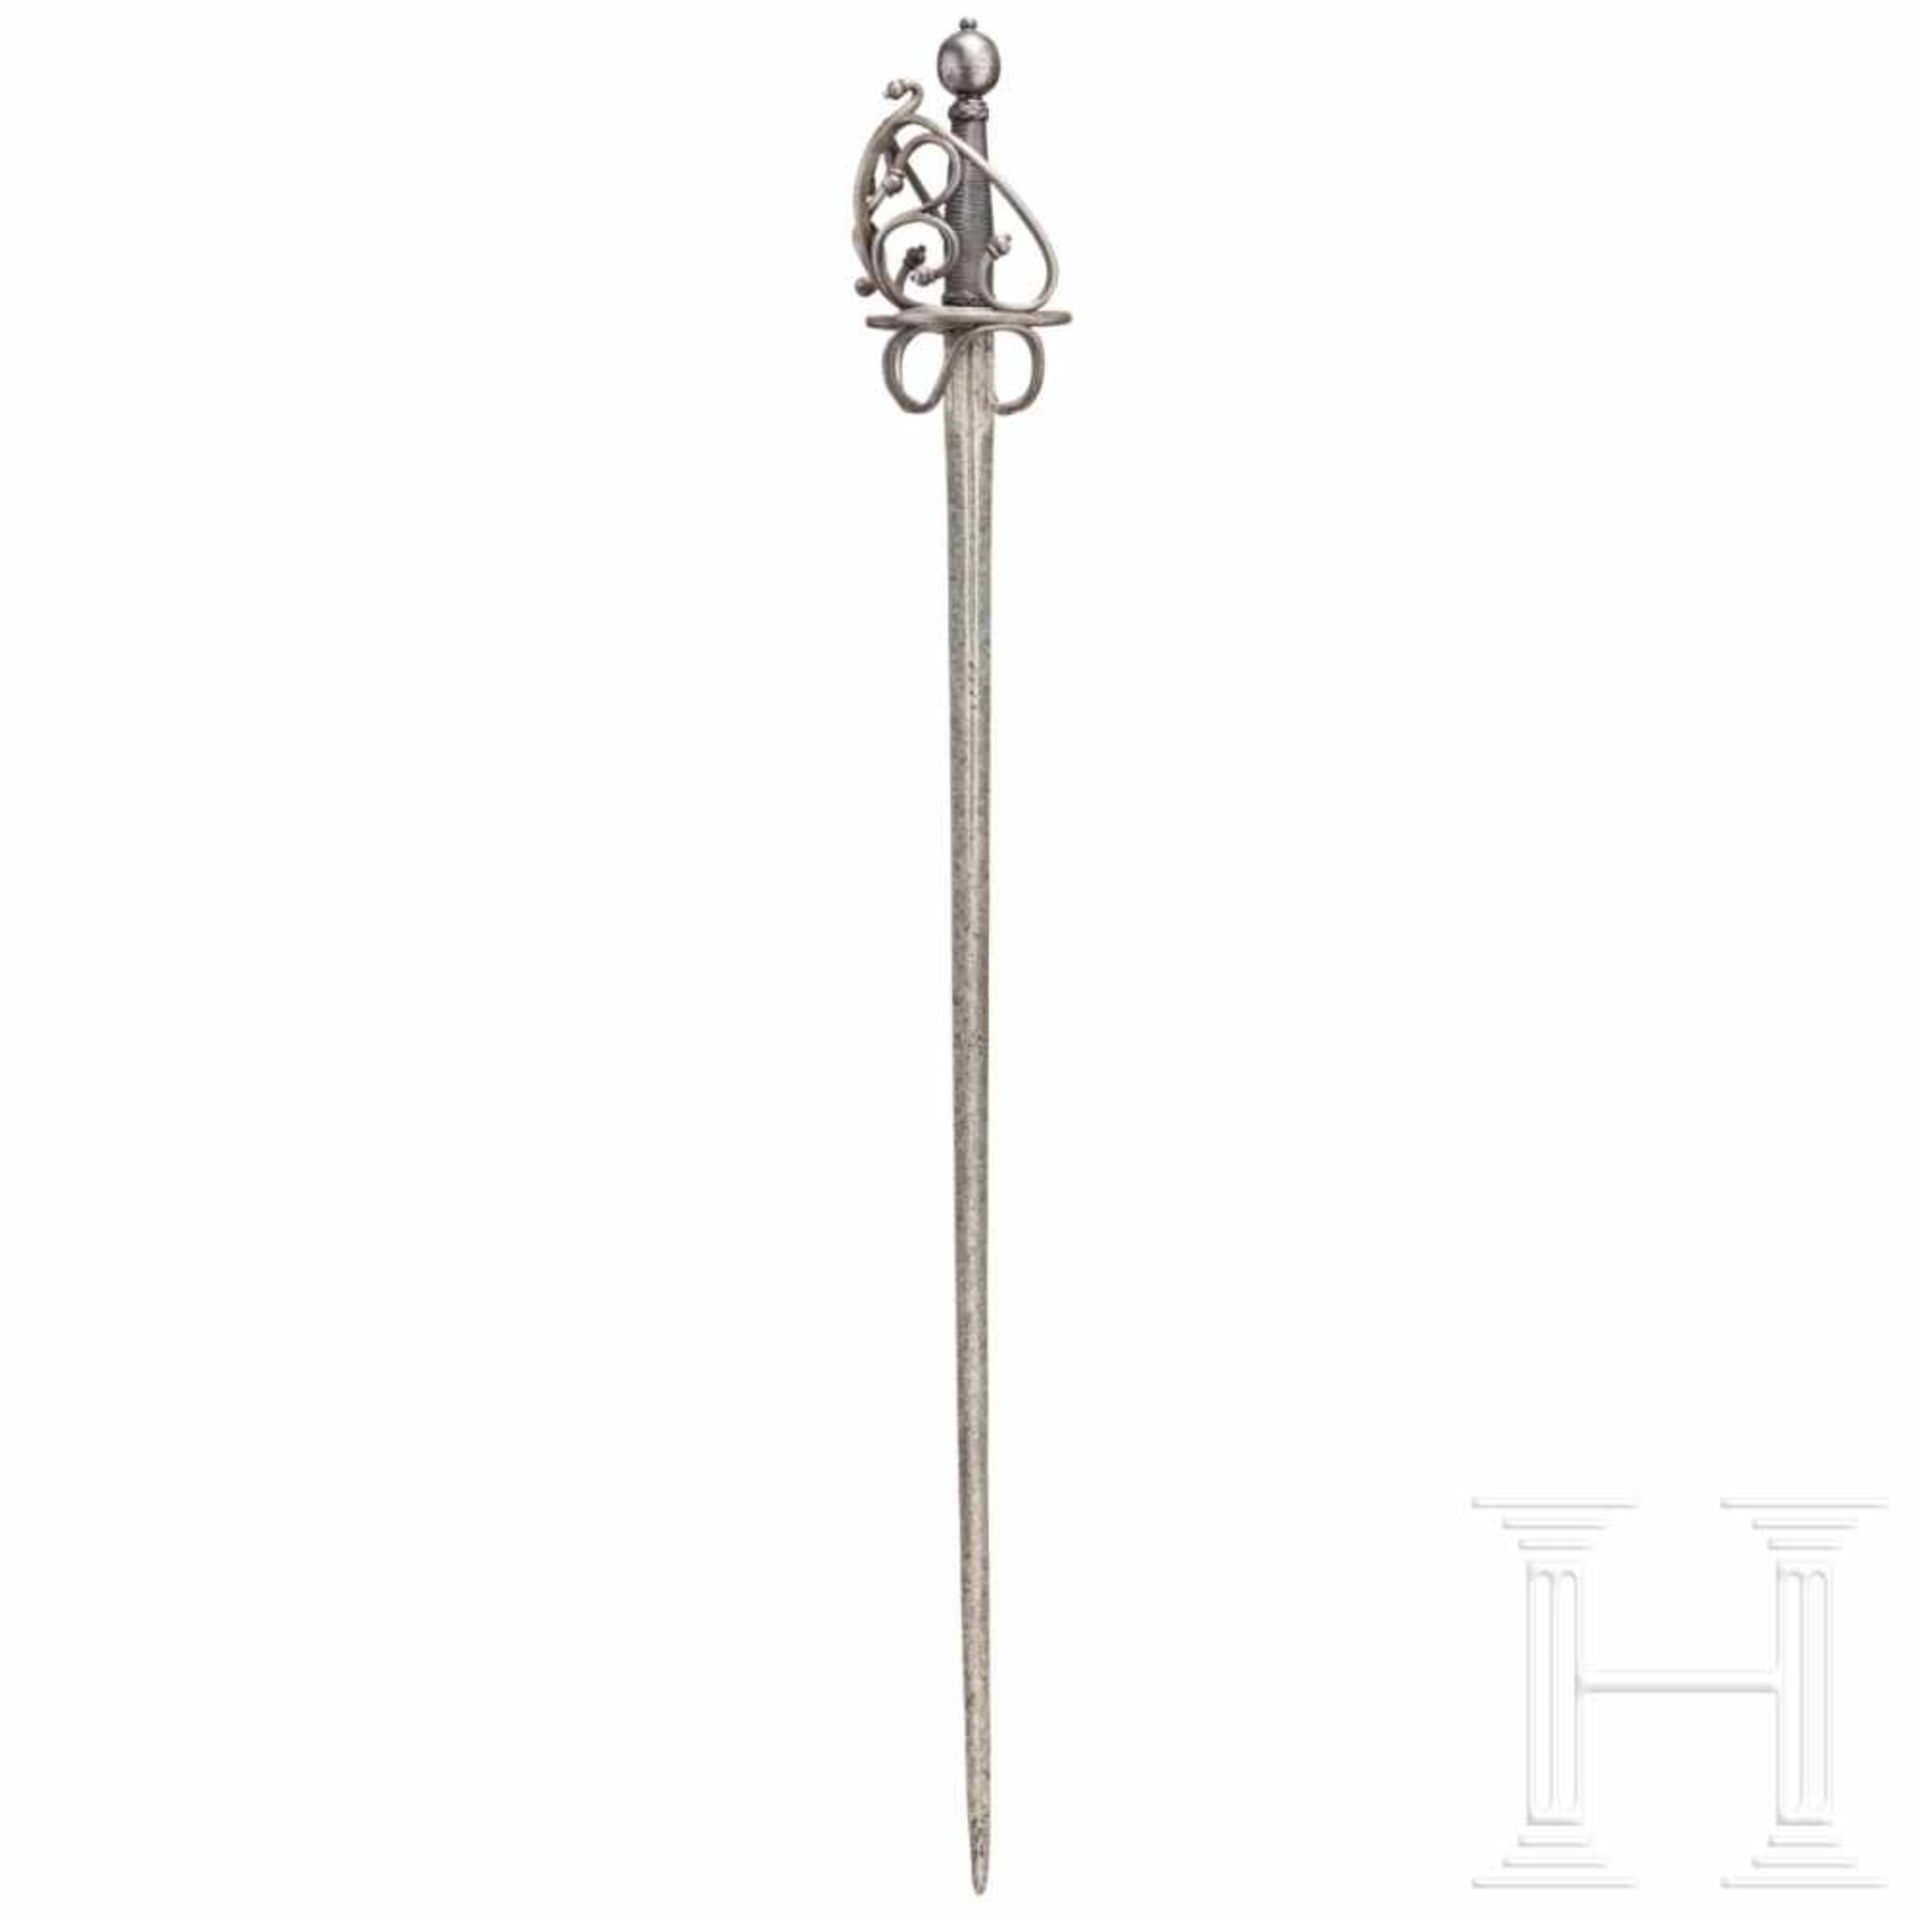 A southern German basket-hilt sword, circa 1560Schlanke zweischneidige Klinge mit linsenförmigem